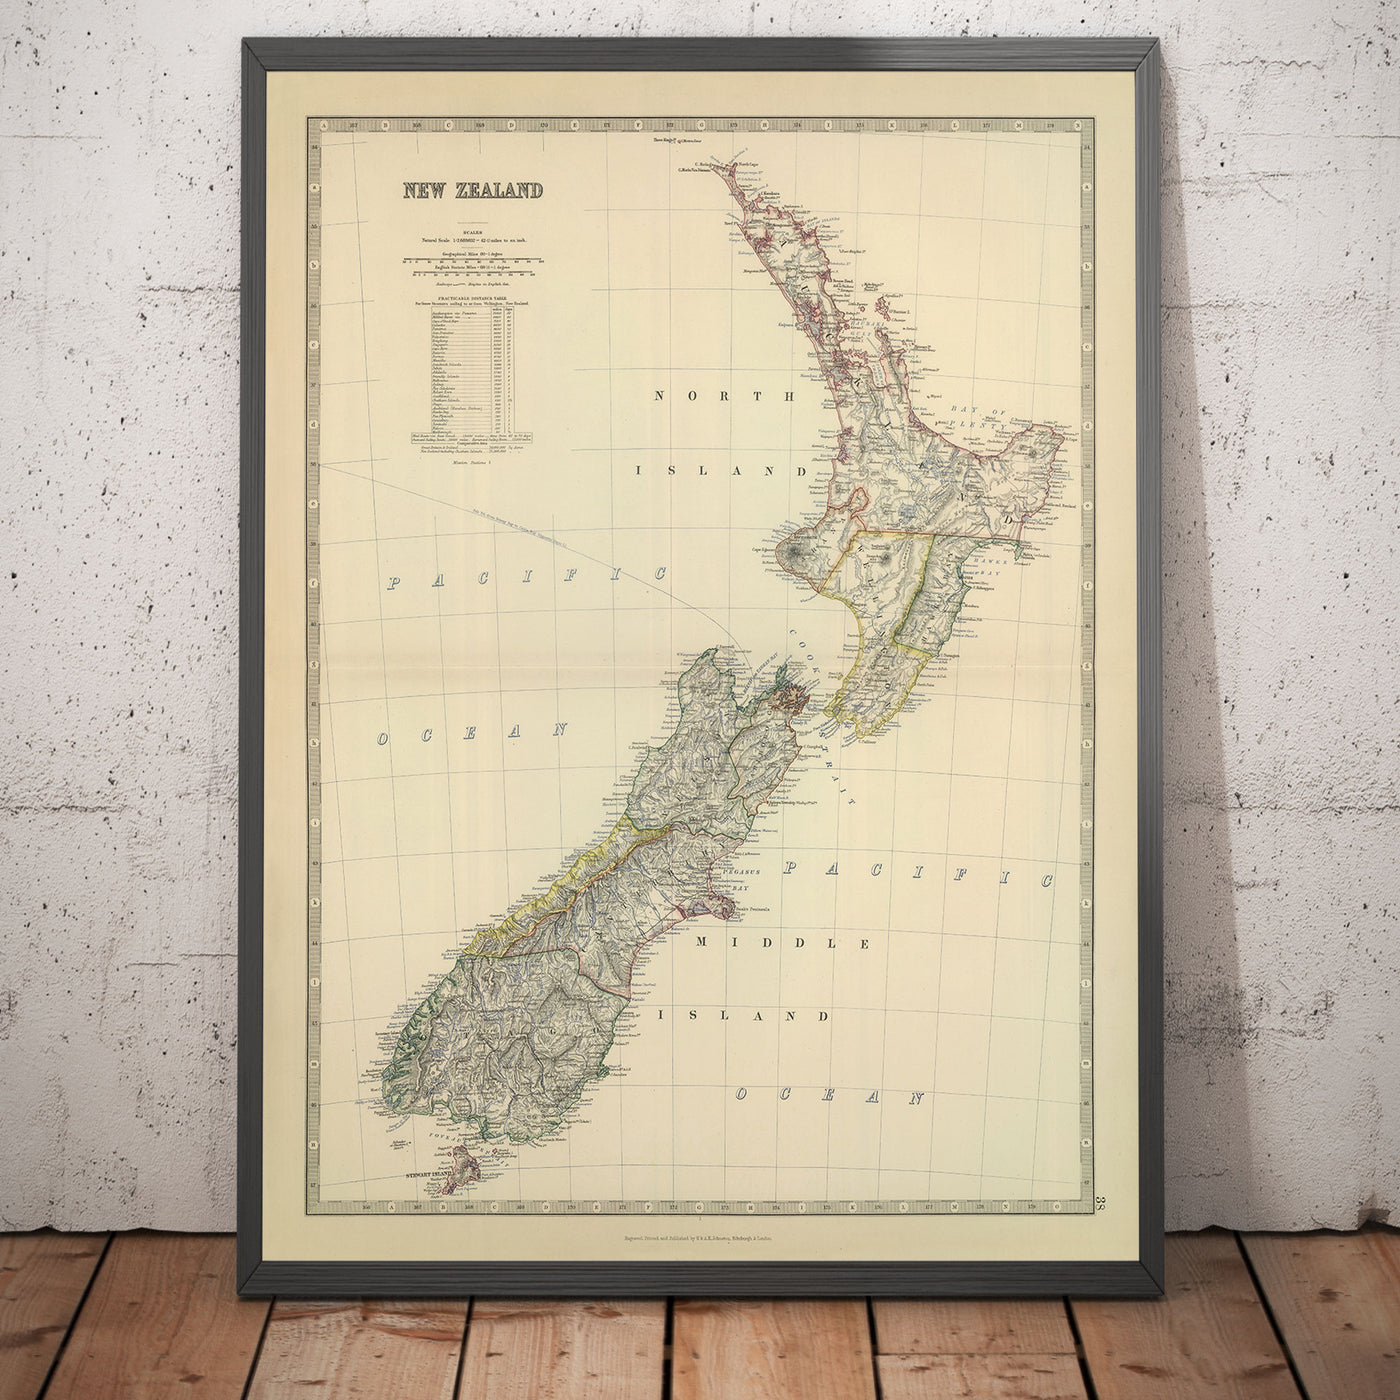 Ancienne carte de la Nouvelle-Zélande en 1879 par AK Johnston - Auckland, Christchurch, Wellington, Queenstown, Dunedin